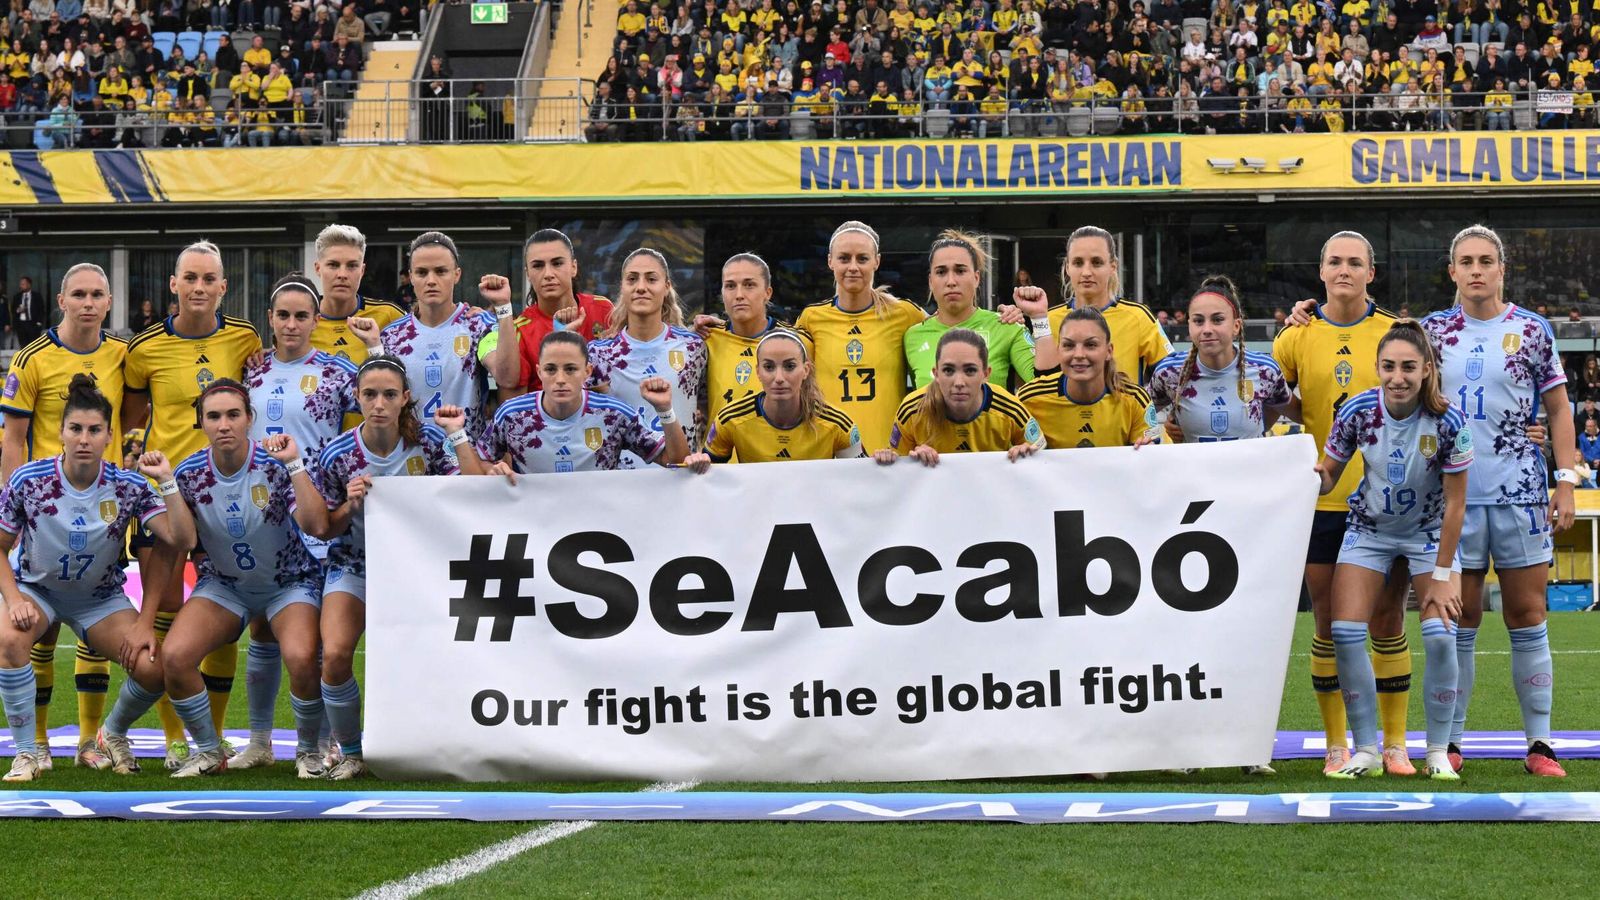 Liga de Naciones Femenina: Suecia se solidariza con España antes del torneo en medio del escándalo en el fútbol español |  Noticias de futbol